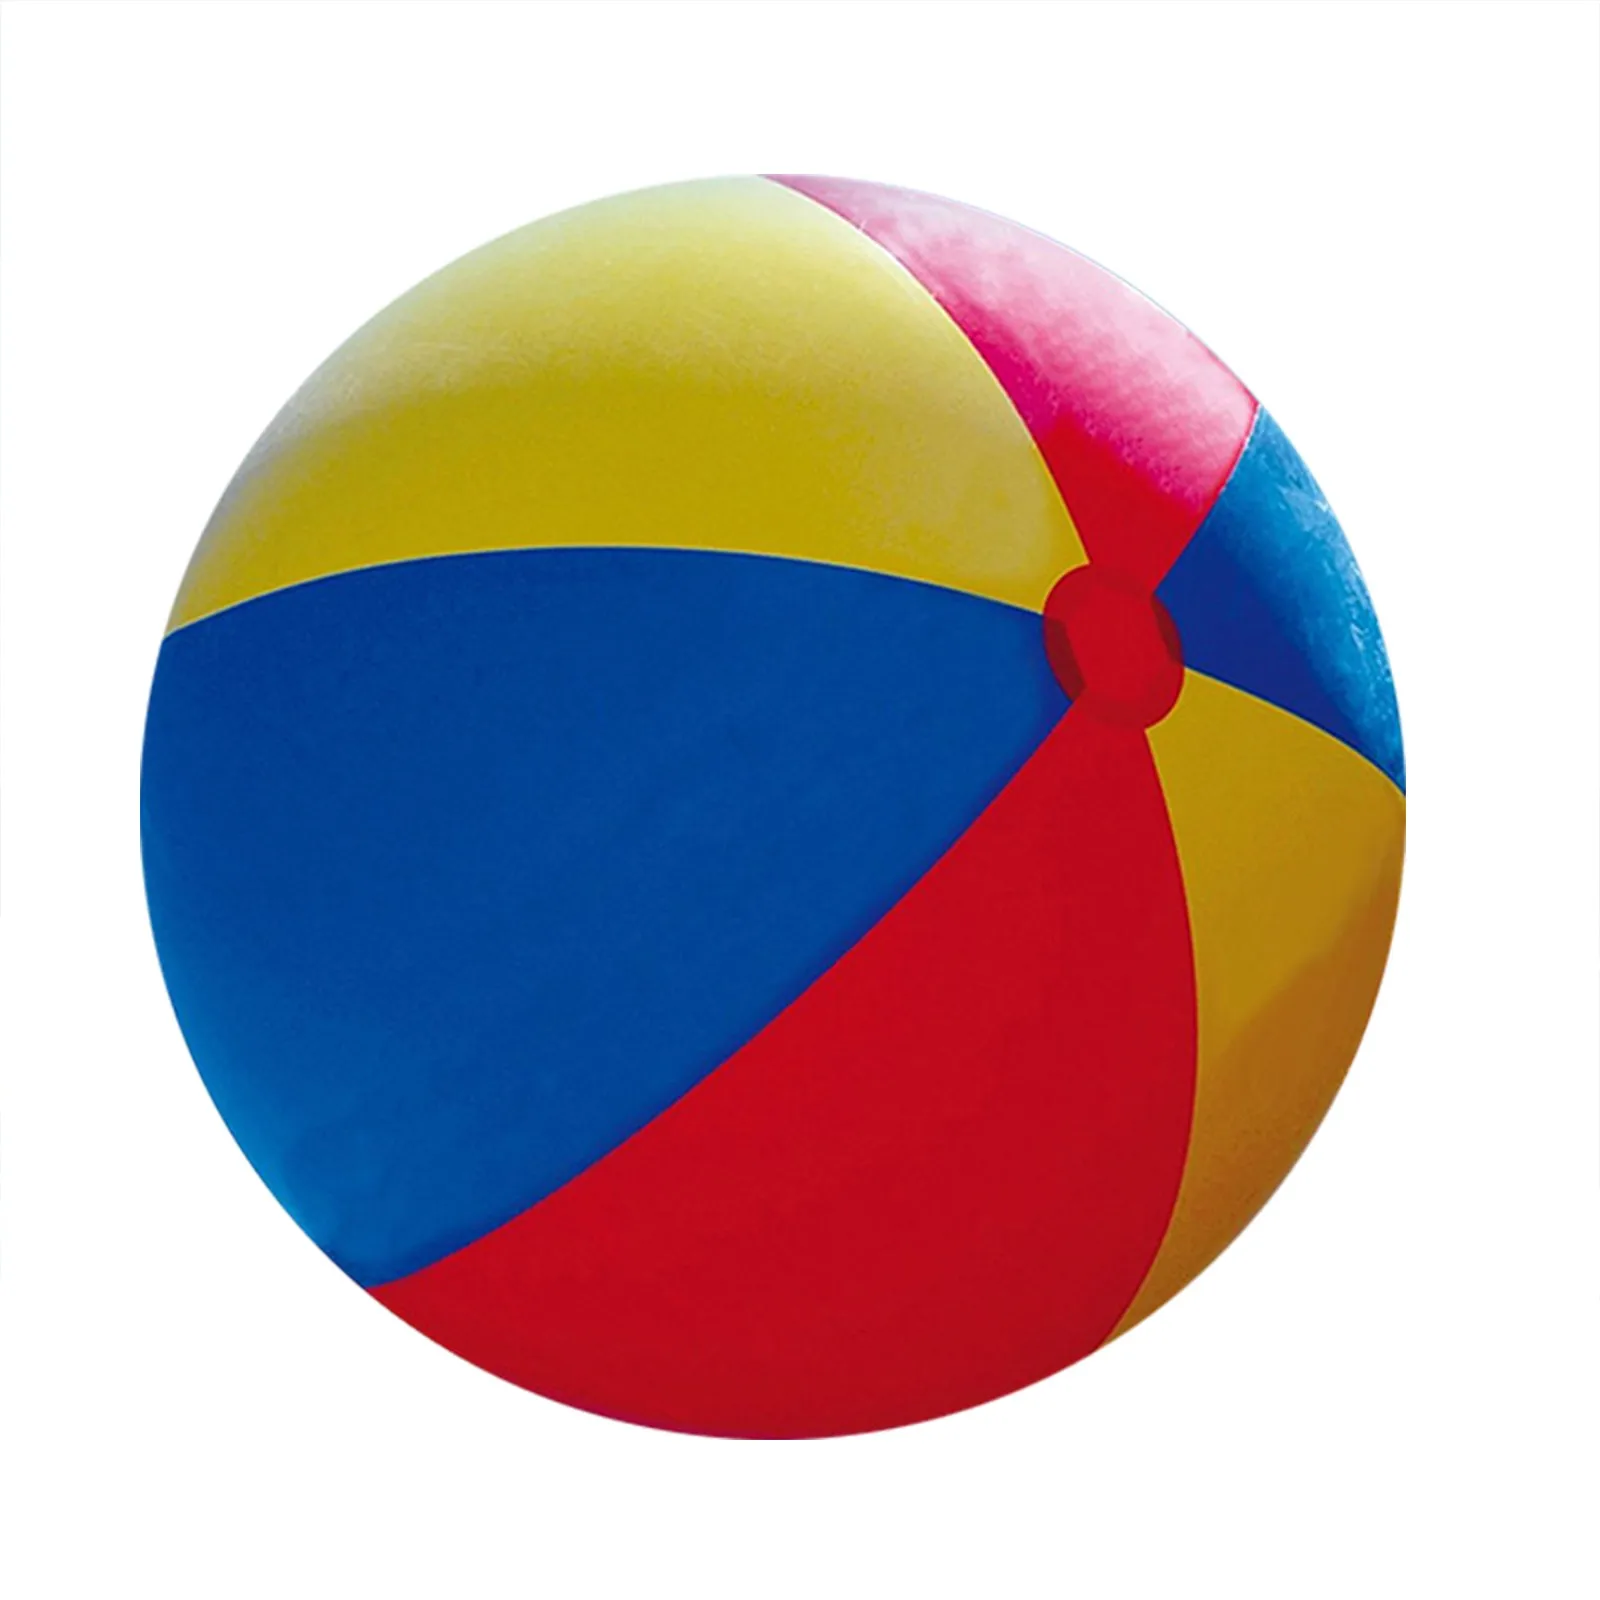 Ballon de plage gonflable géant, jouet de piscine pour enfants et adultes -  Taille Jumbo 5 pieds (60 pouces)